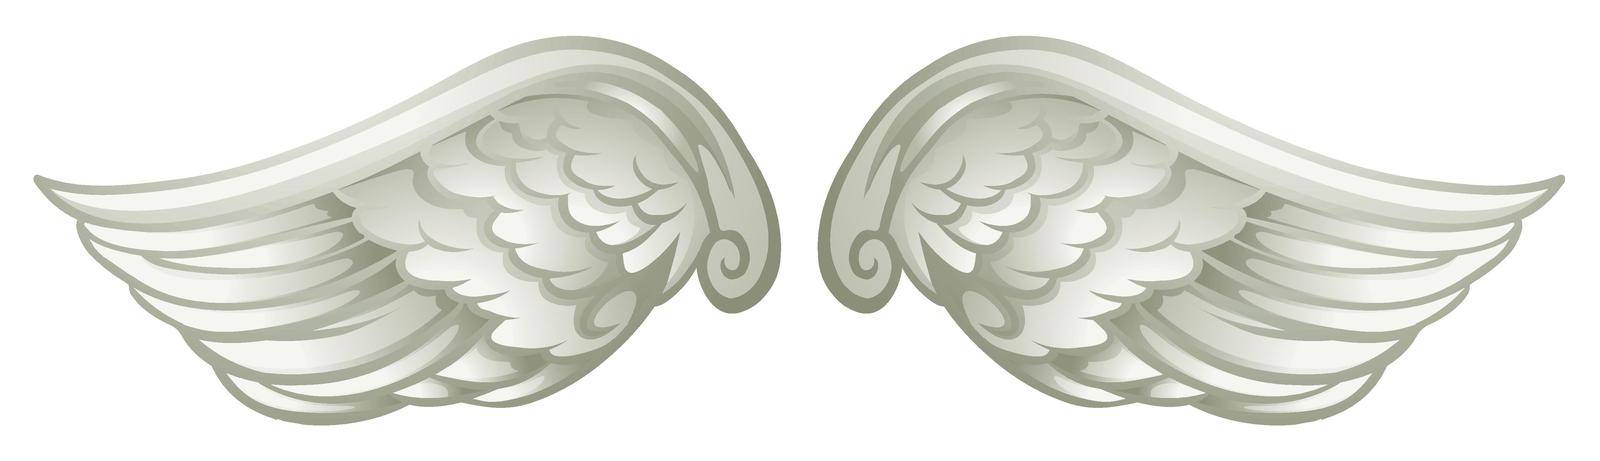 Pair of white wings by iimages